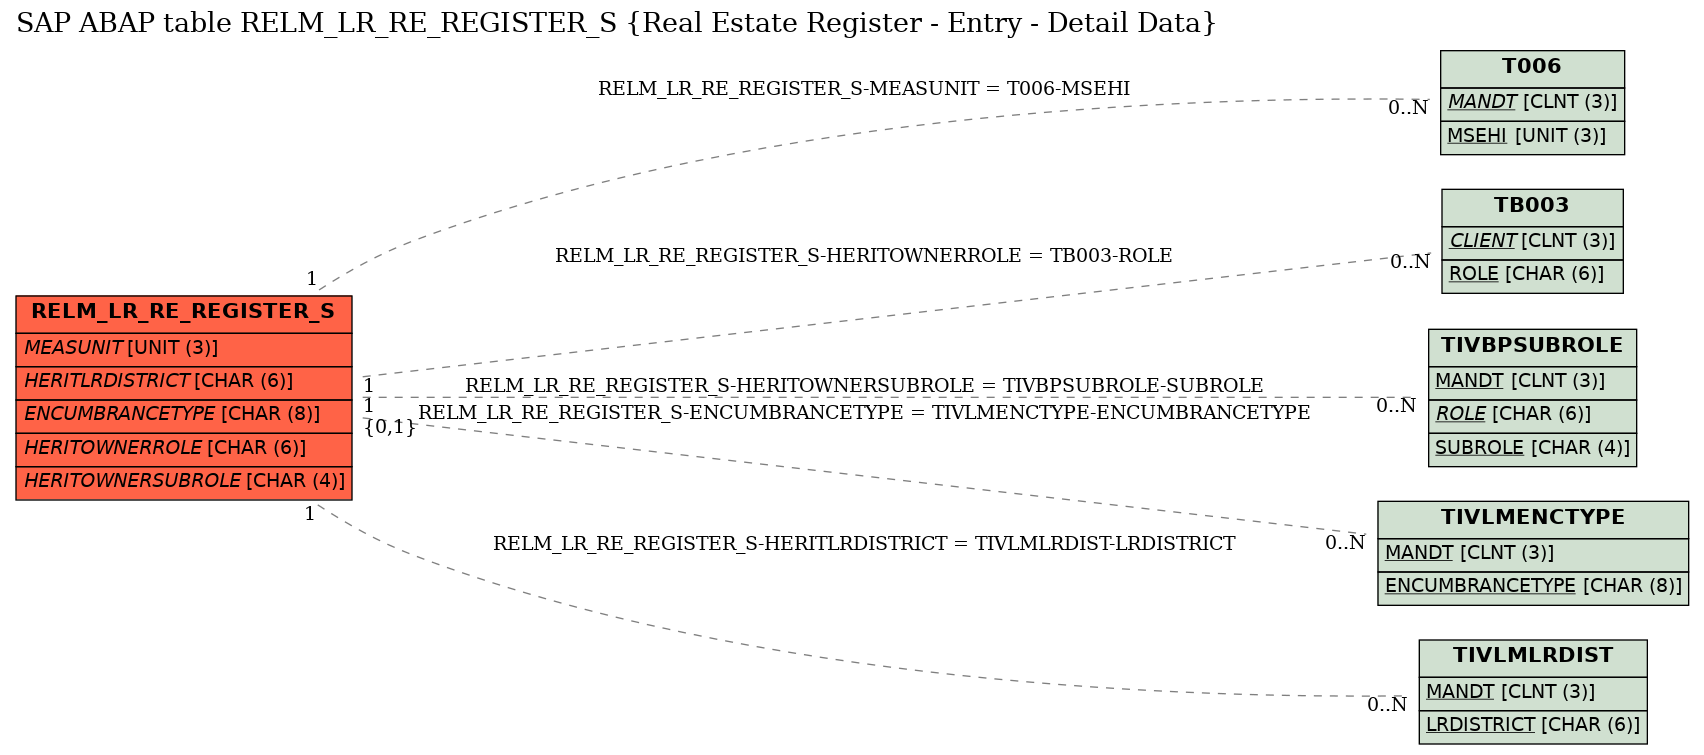 E-R Diagram for table RELM_LR_RE_REGISTER_S (Real Estate Register - Entry - Detail Data)